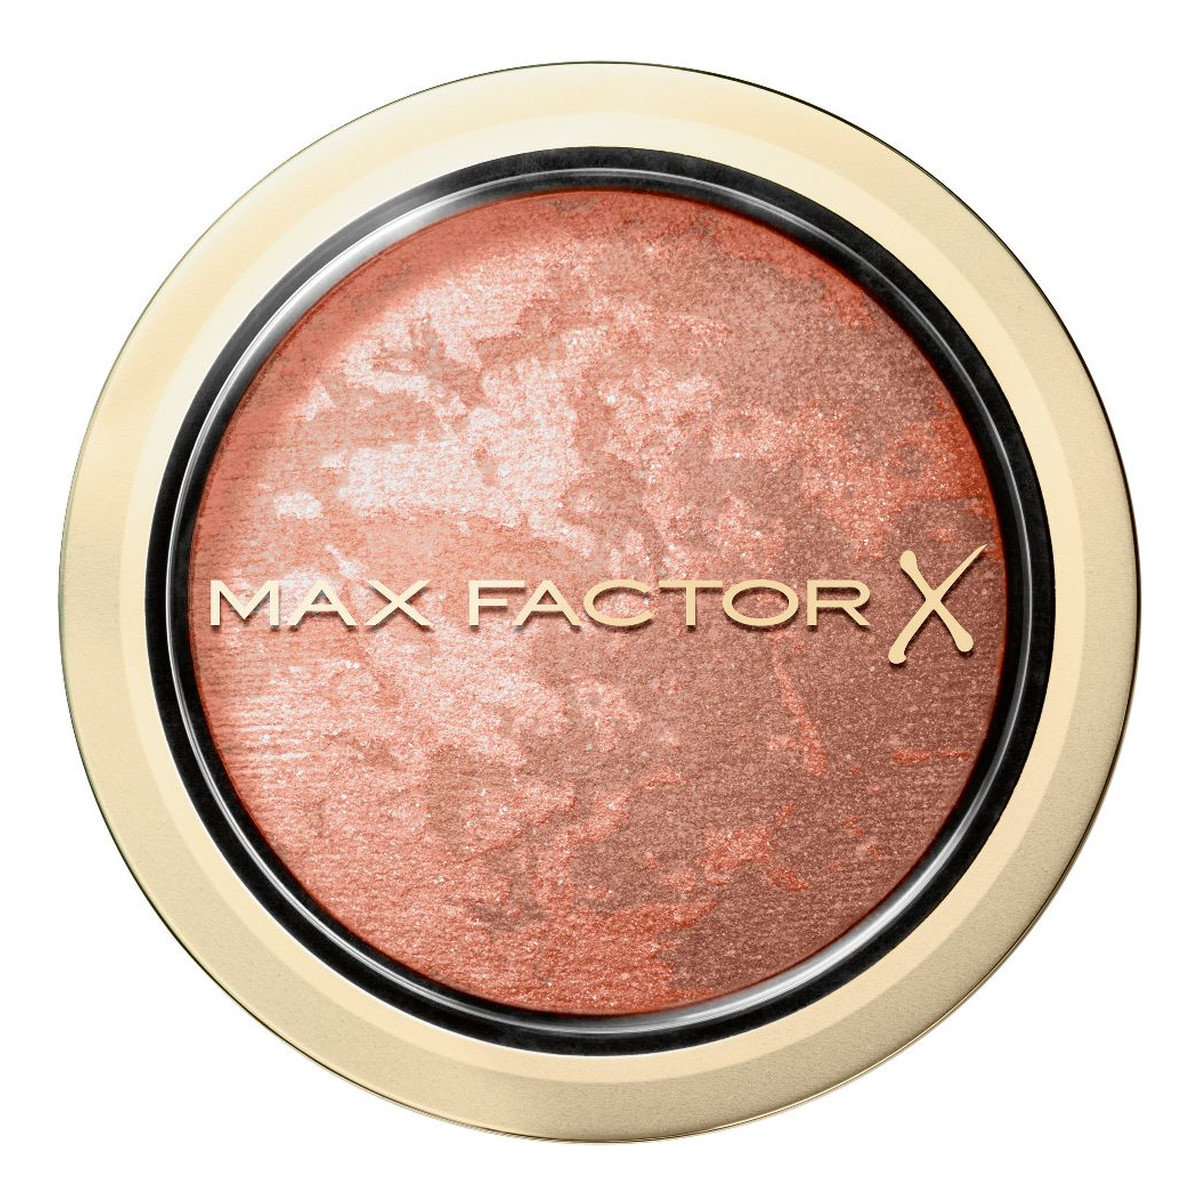 Max Factor Facefinity Blush róż do policzków 1.5g 1.5g